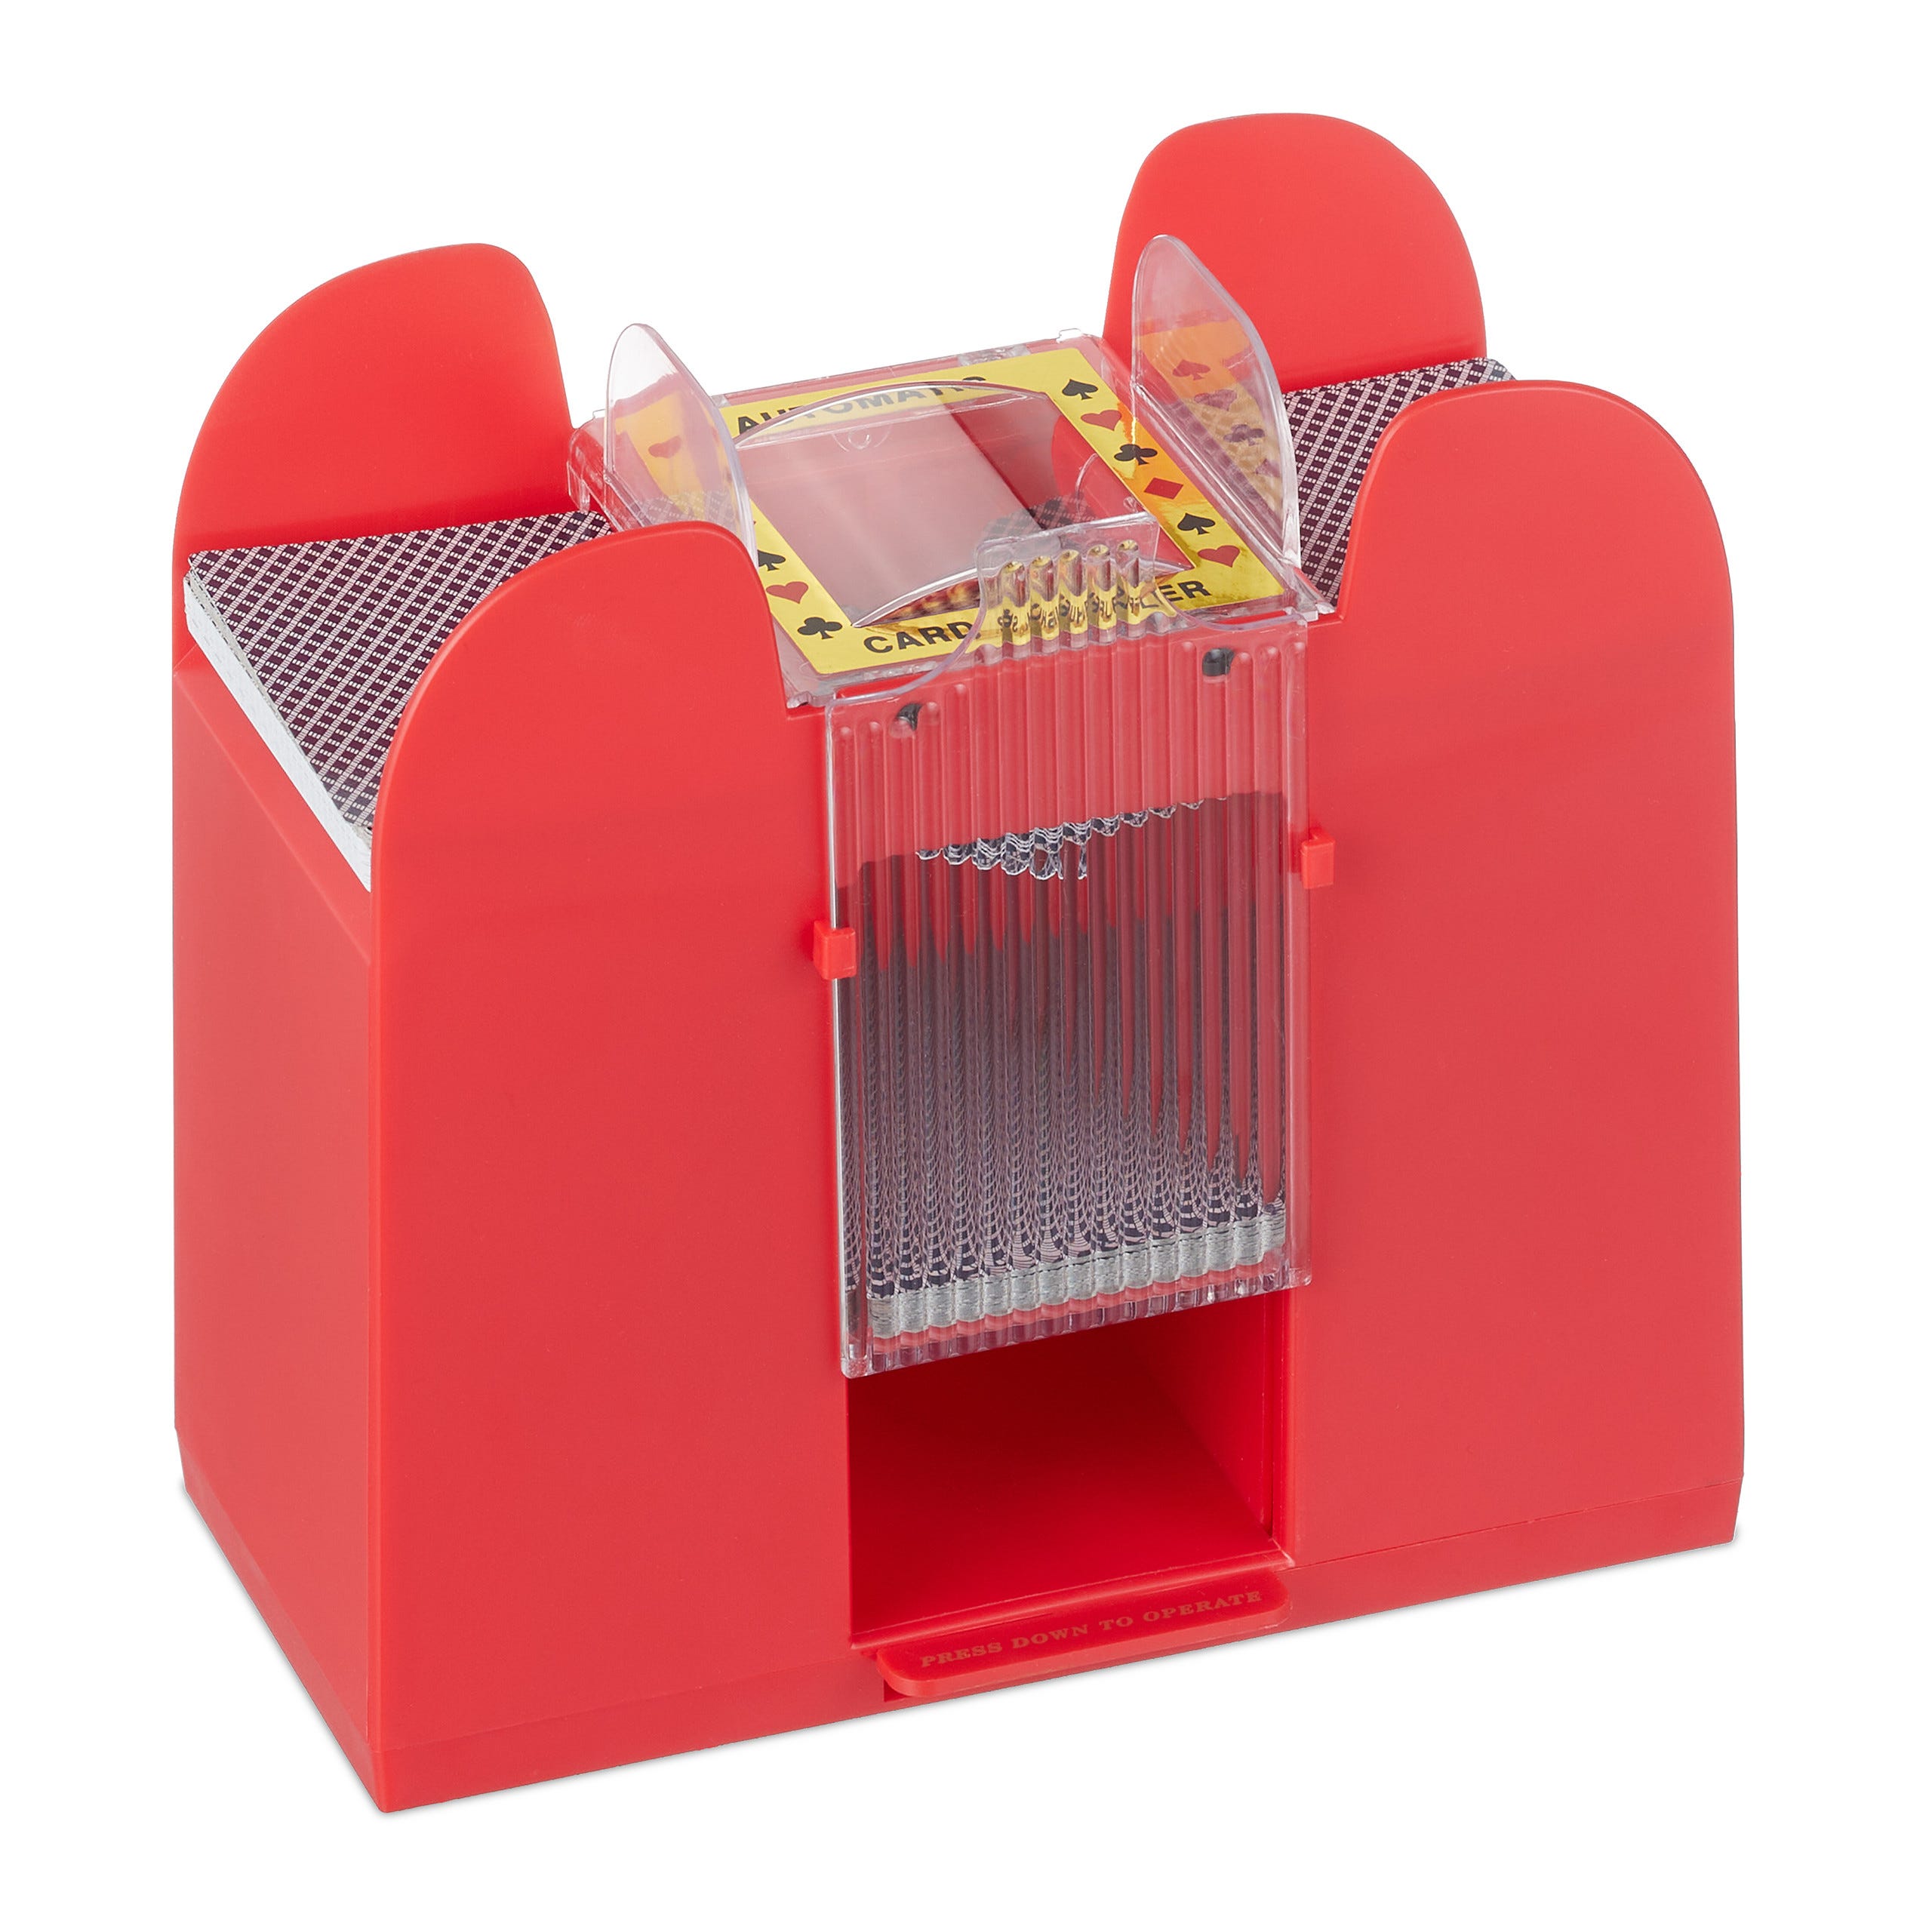 Relaxdays Mescolatore Automatico per Carte da Gioco, Mischiacarte 6 Mazzi,  Distributore in Plastica Card Shuffler, Rosso